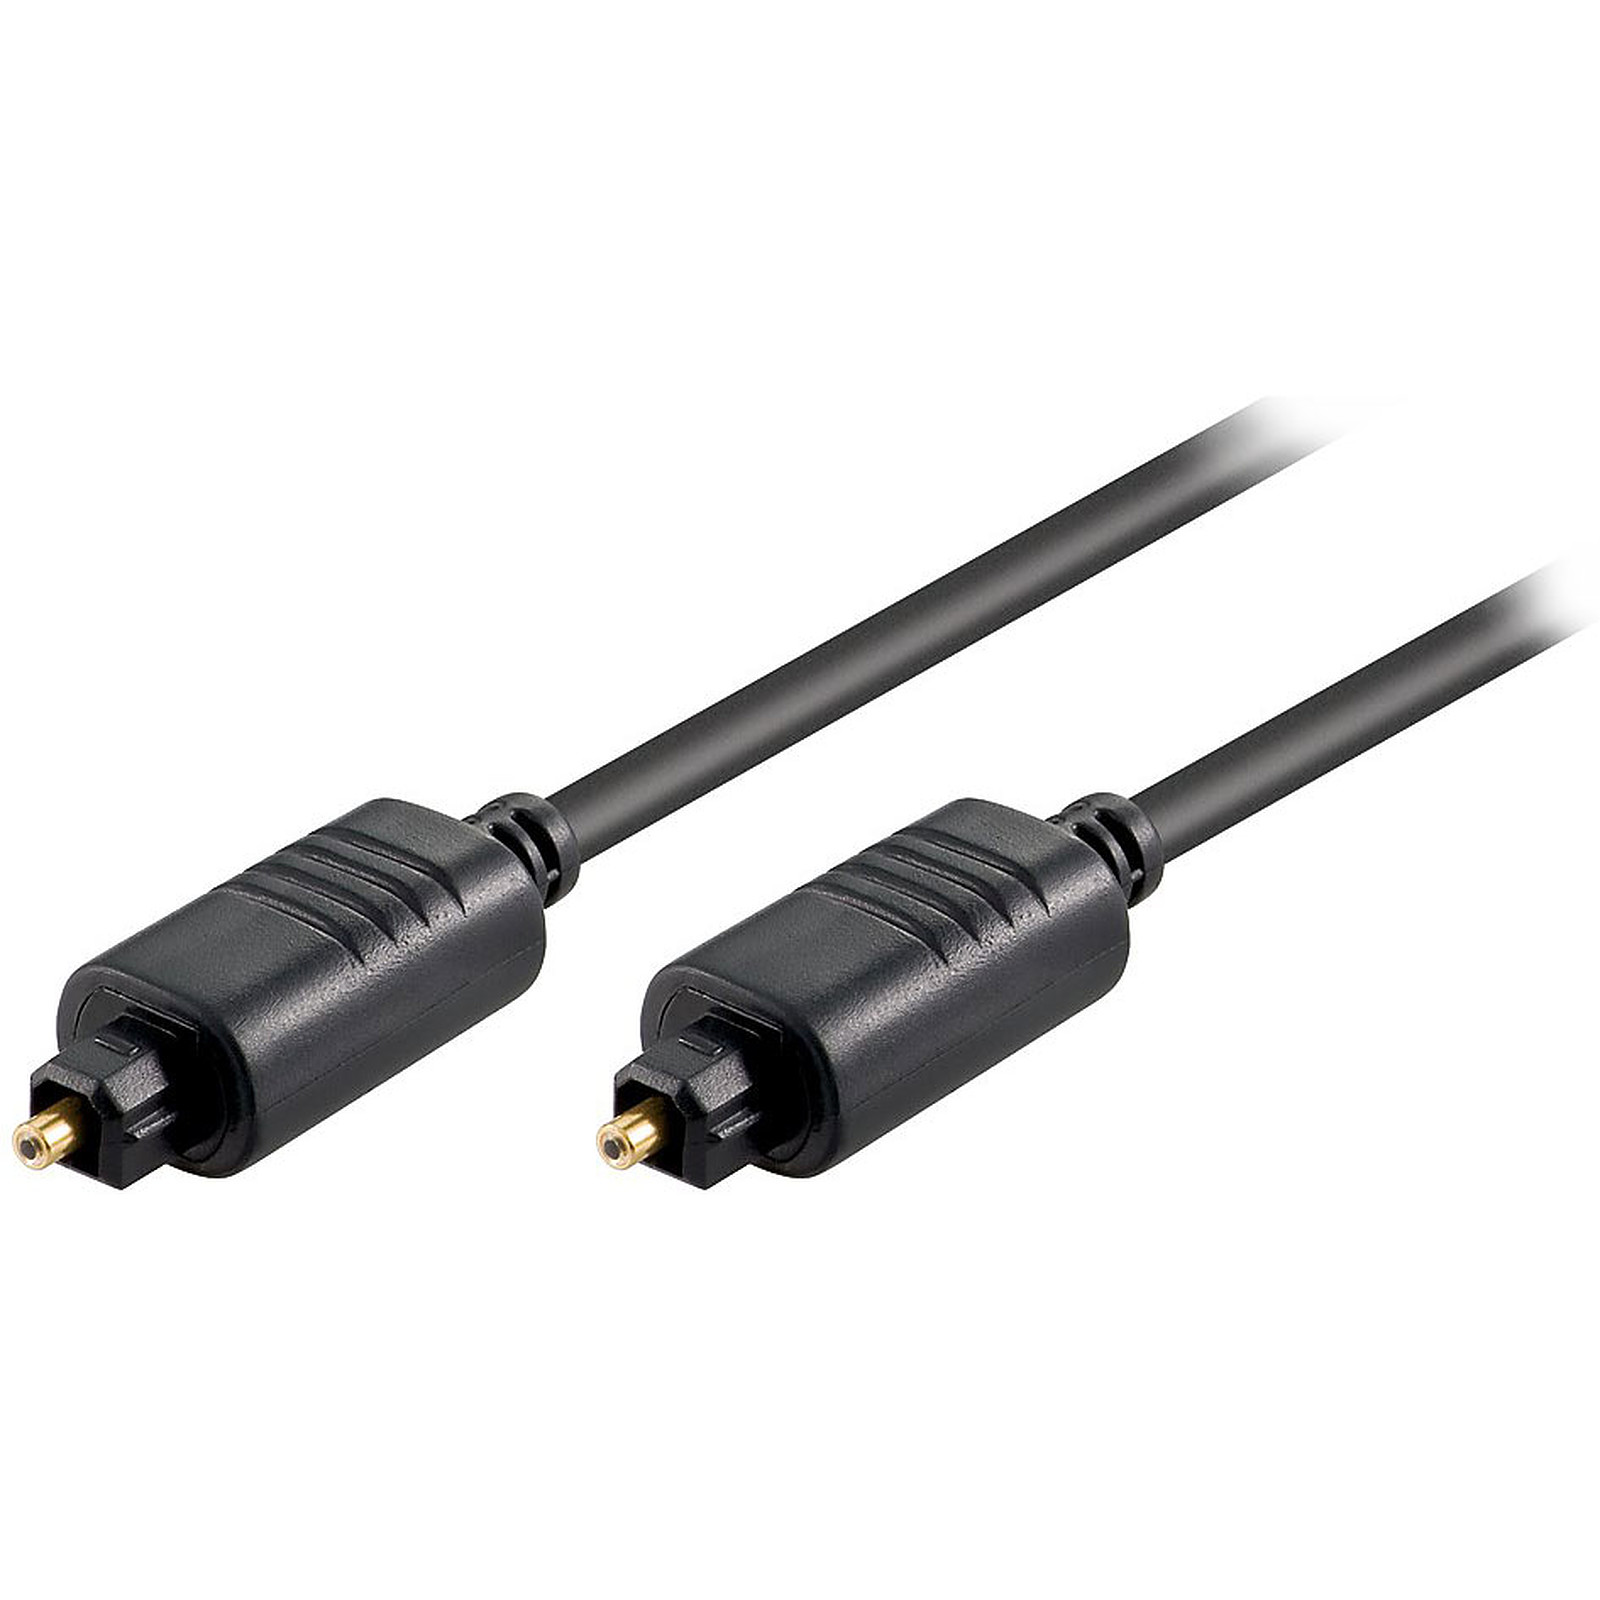 Cable audio numerique haute qualite Toslink Male/Male - 2 m - Cable audio numerique Generique